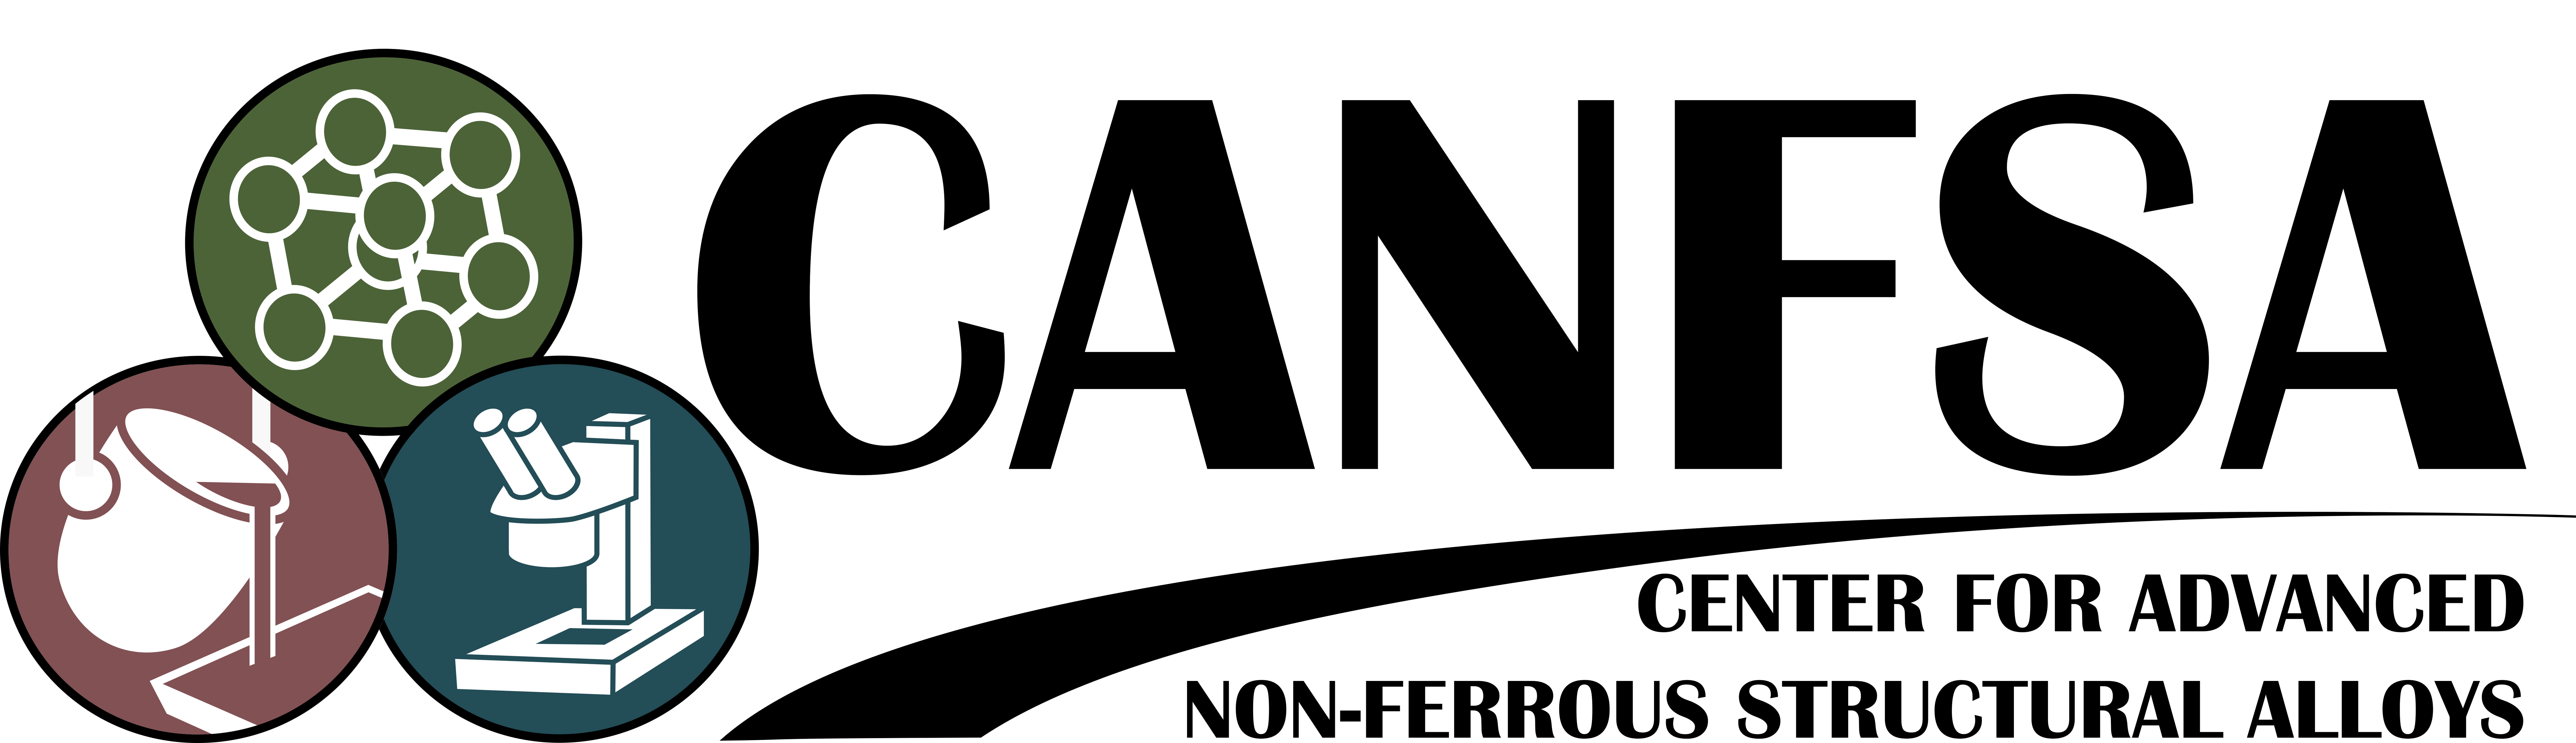 CANFSA logo